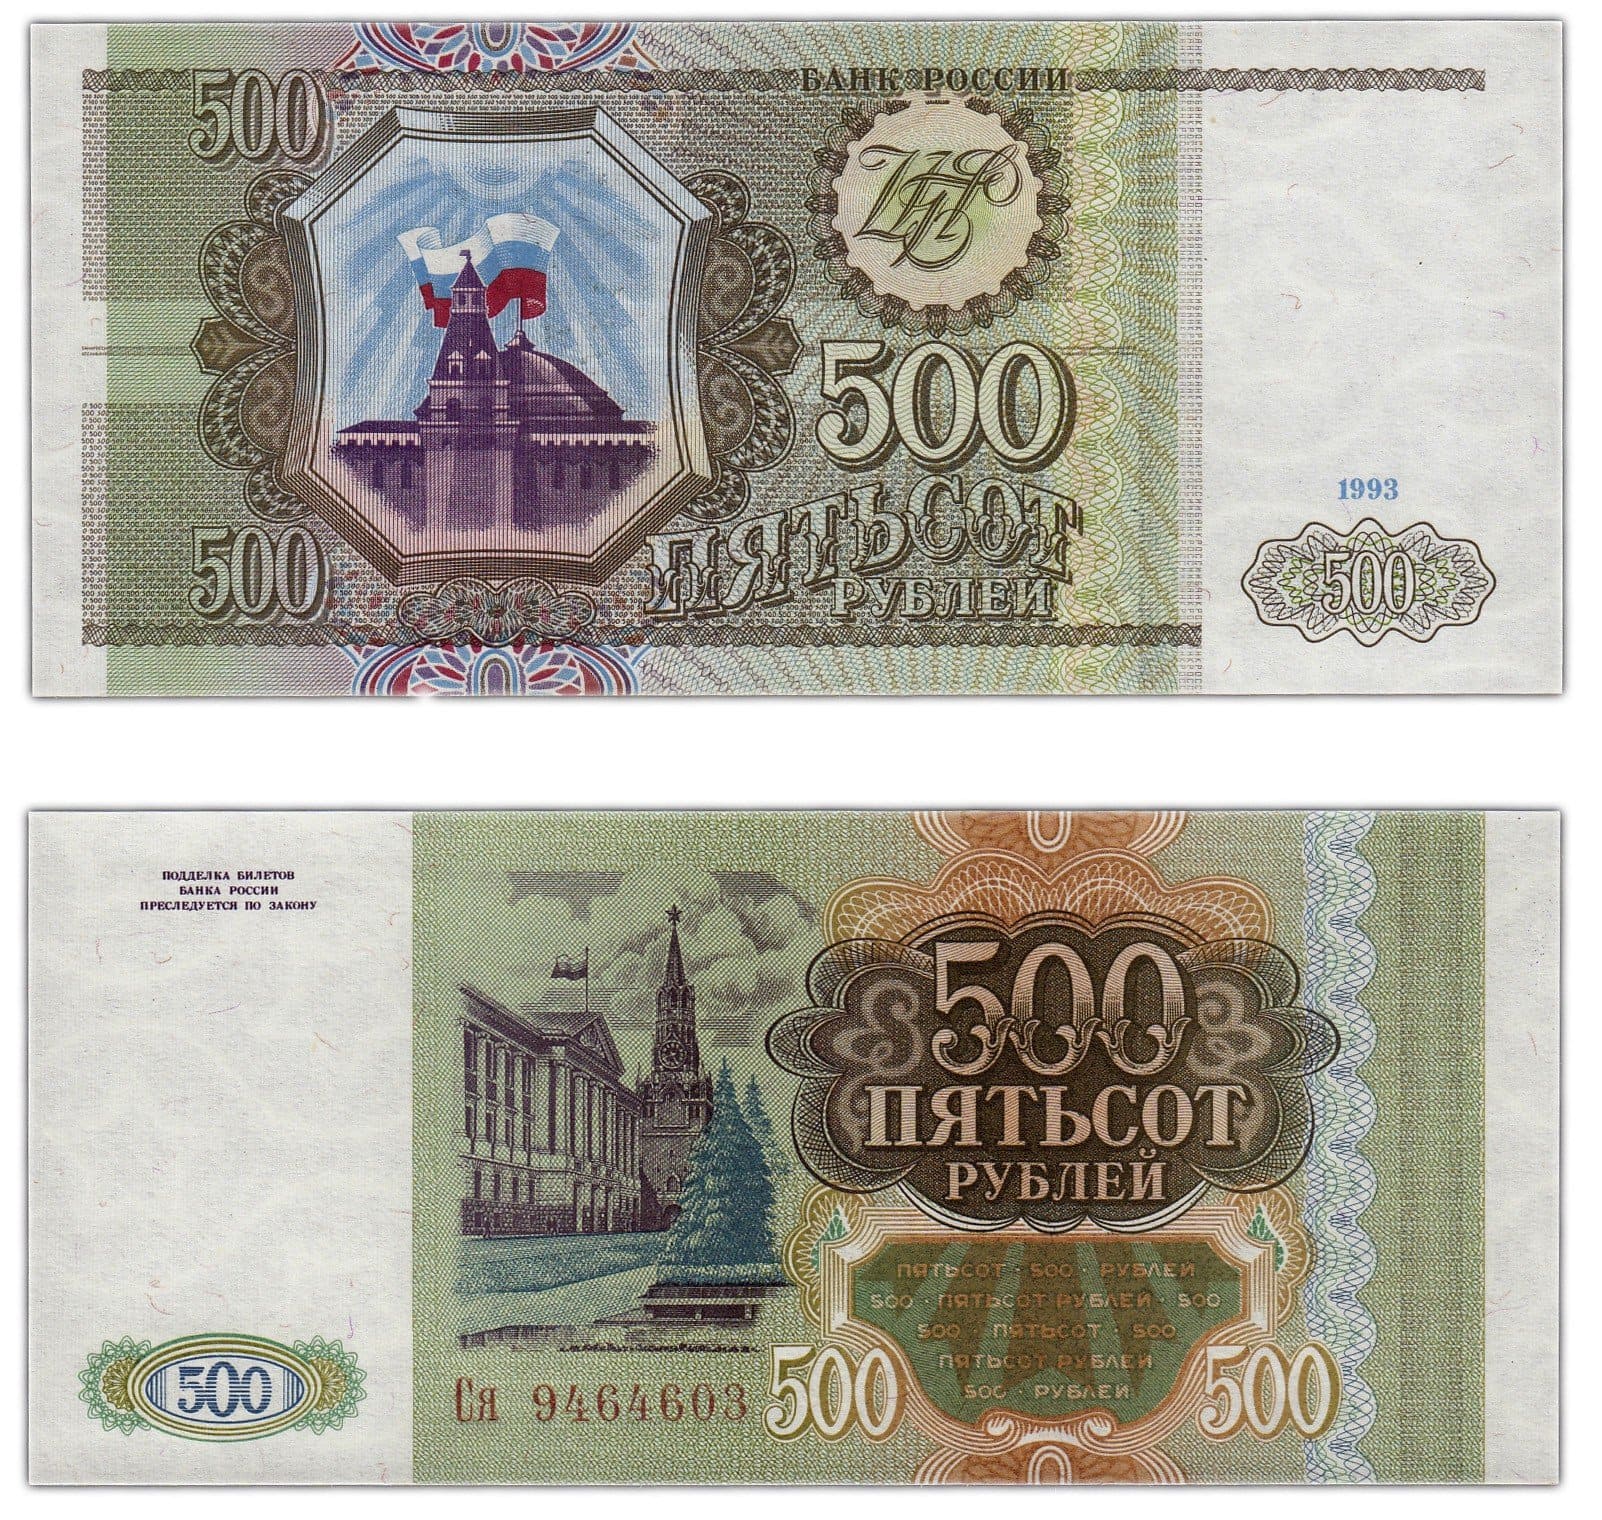 500 рублей россии. Купюра 500 рублей 1993. Пятьсот рублей 1993 года. 500 Рублей 1993 года. 500 Рублей.